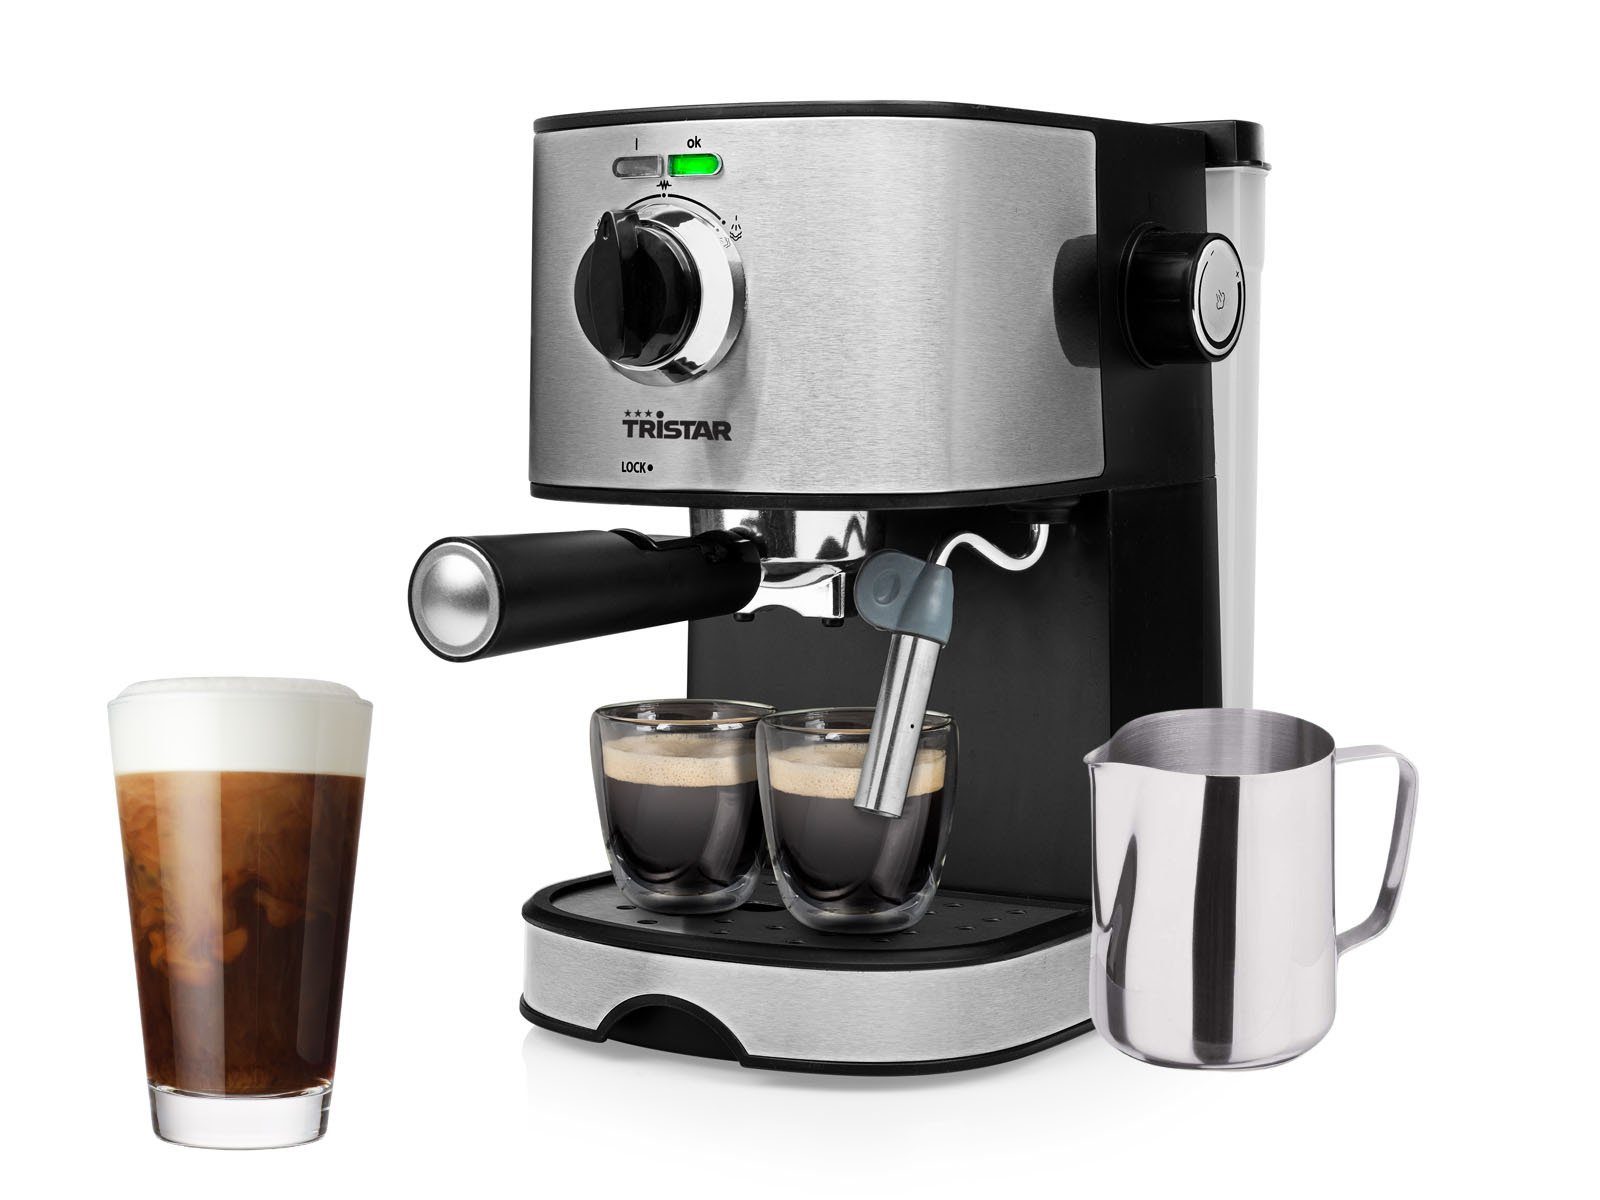 Tristar Espressomaschine, italienische Siebdruck Kaffee &  Siebträger-Maschine mit Milchaufschäumer für Latte Macchiato & Cappuccino  Espressokocher online kaufen | OTTO